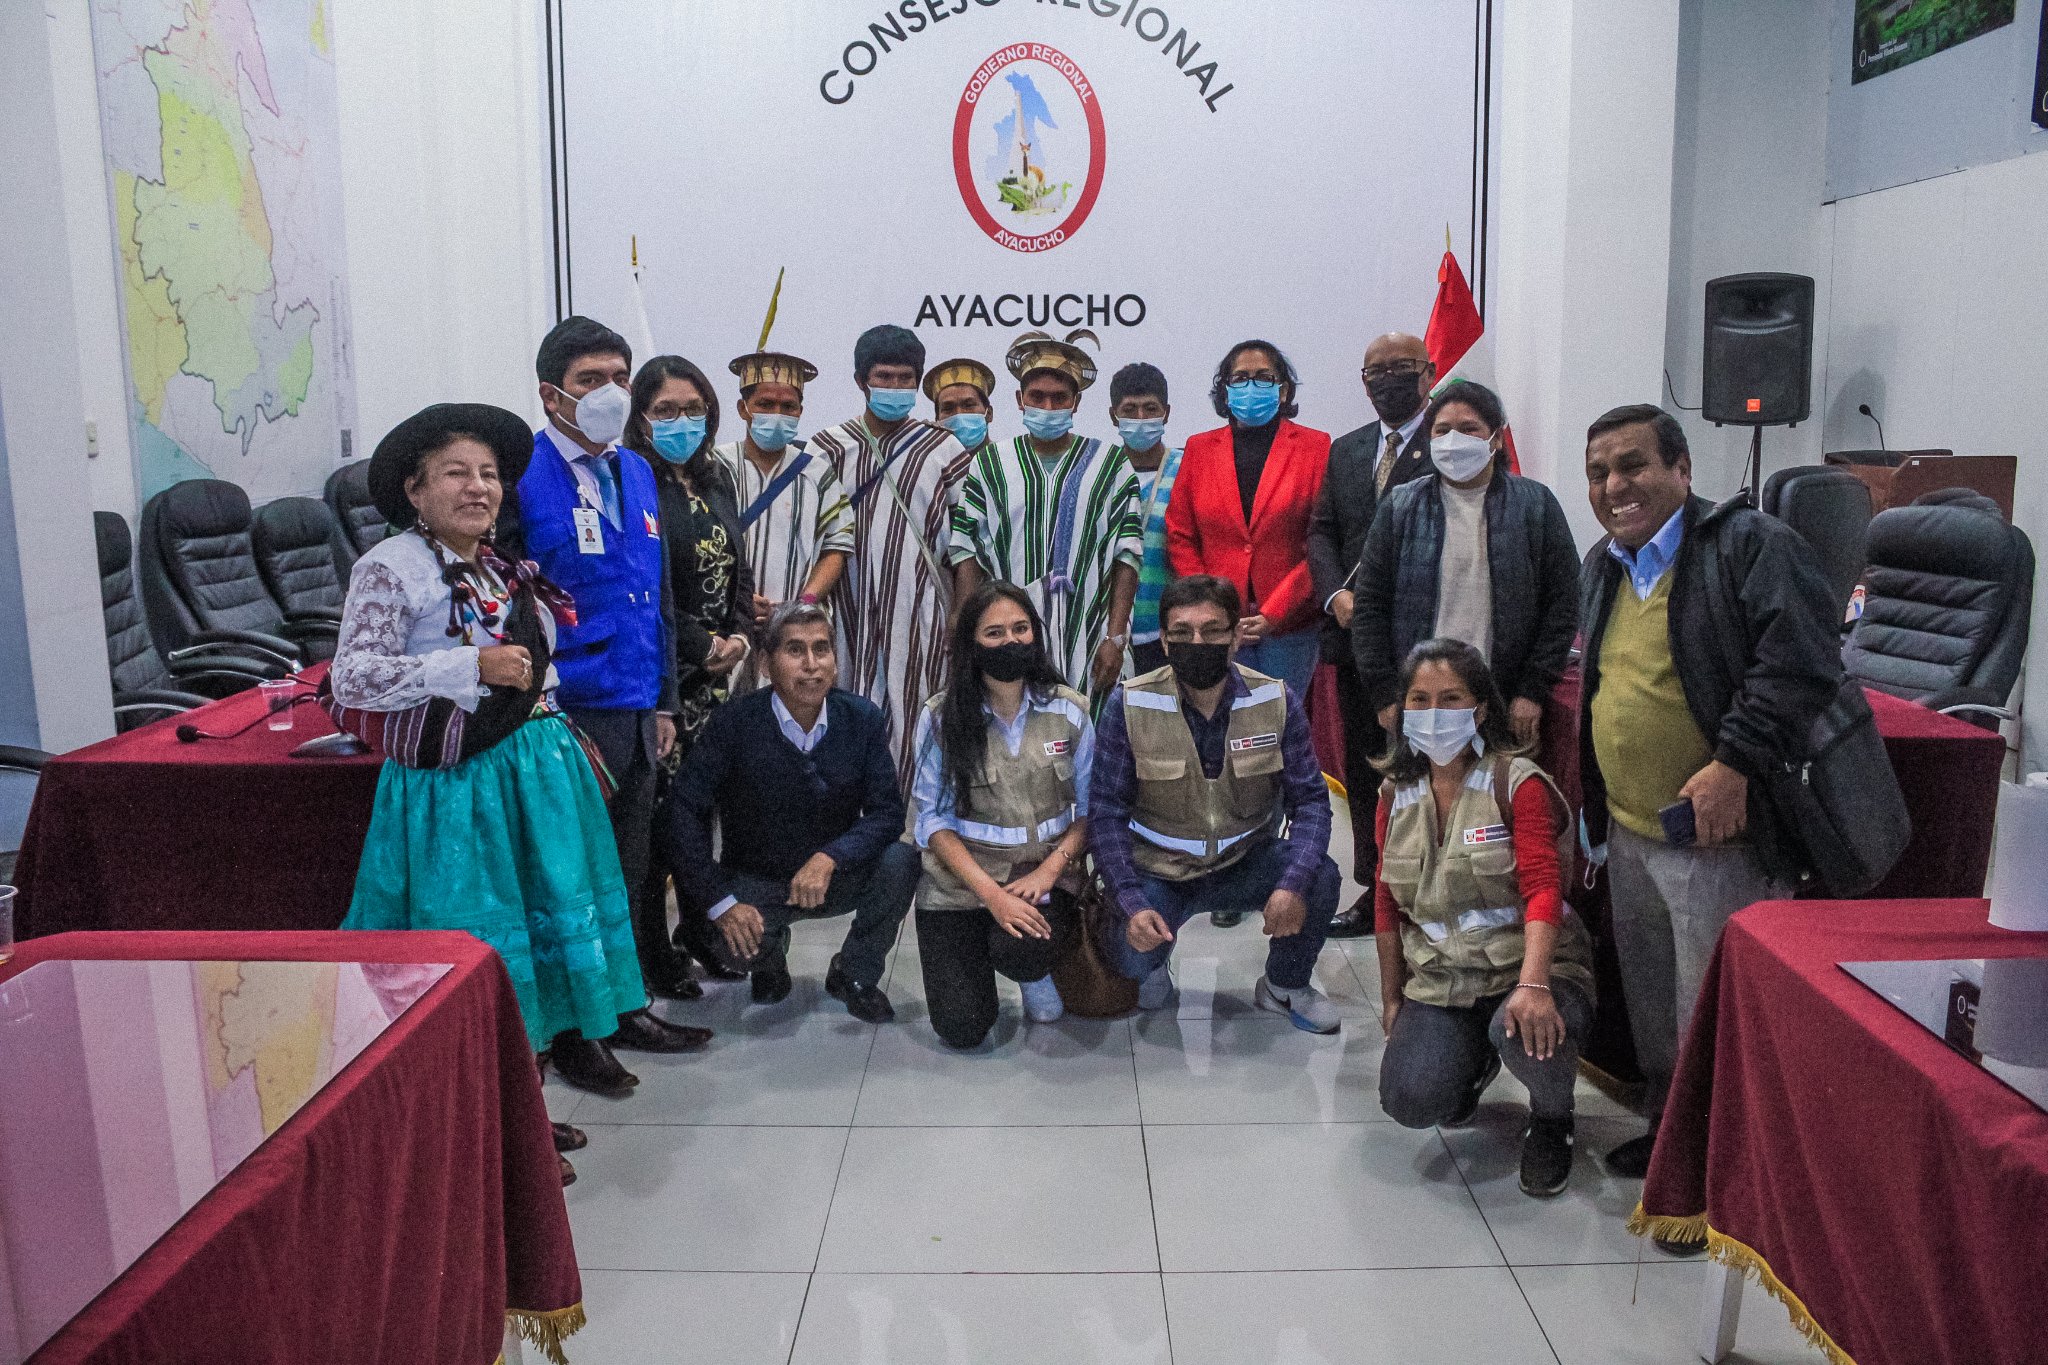 Reunión de Comunidades Nativas con la Consejera Regional de Ayacucho.